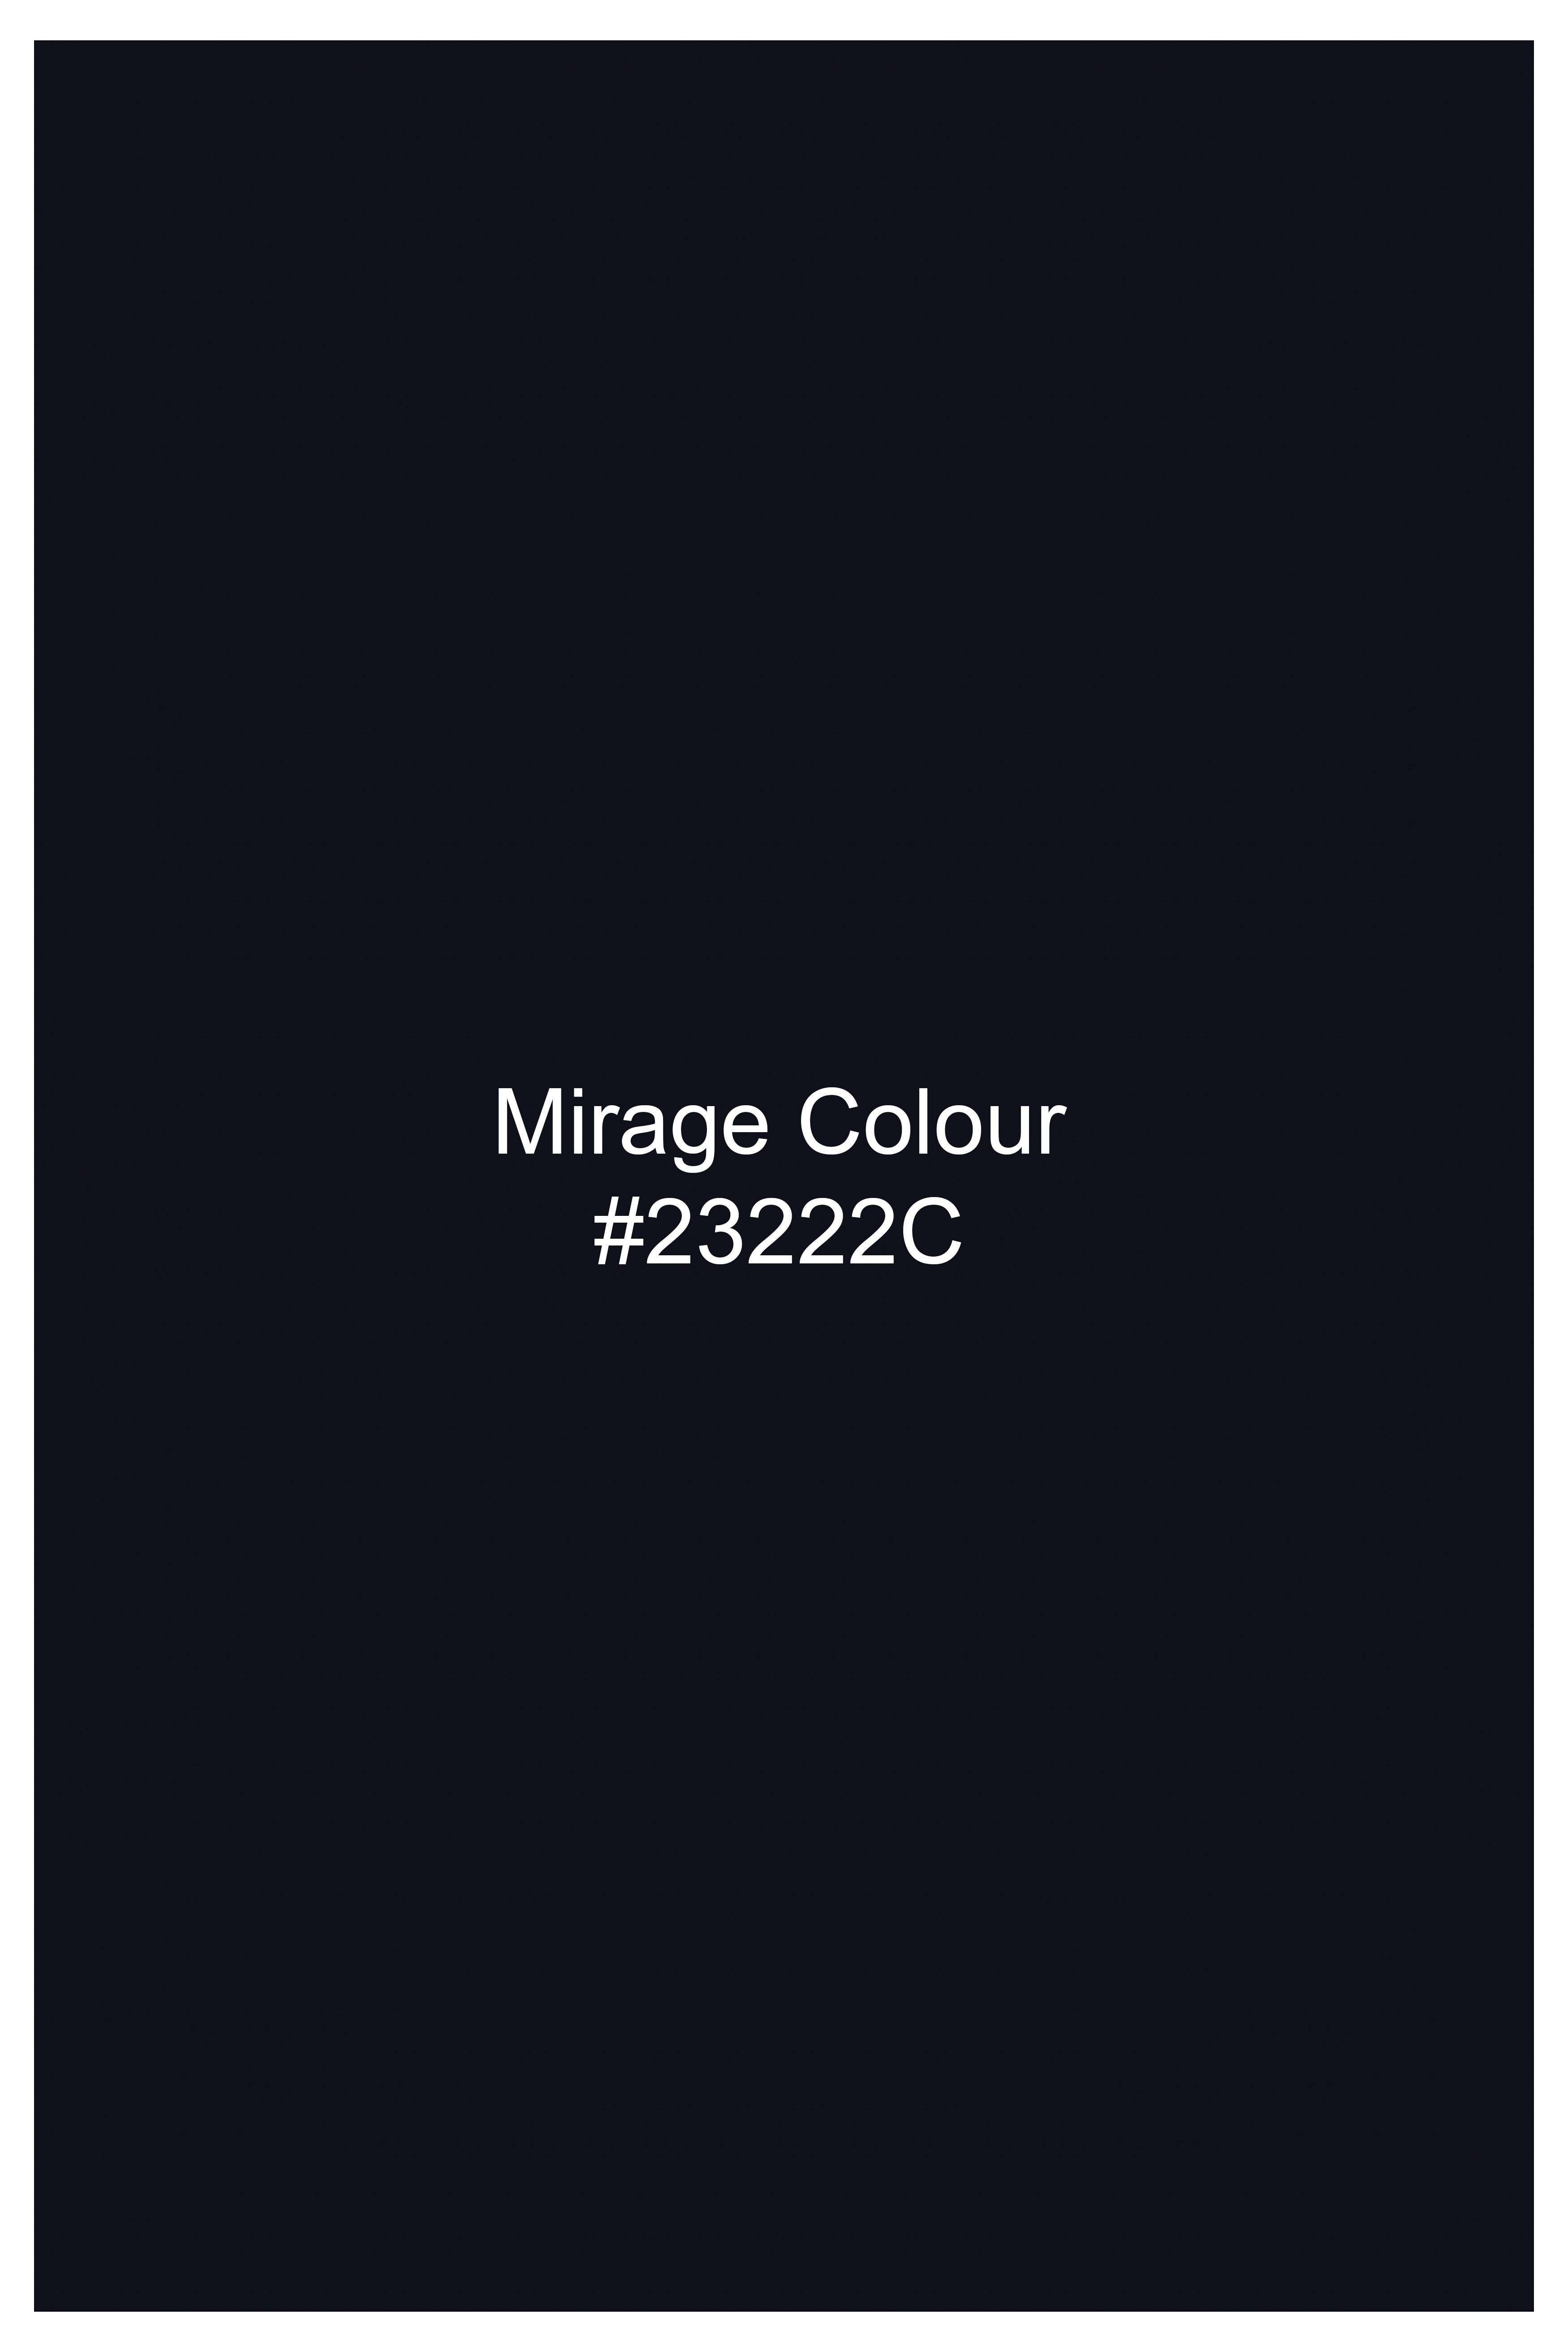 Mirage Blue Premium Cotton Designer Suit ST2759-D188-36, ST2759-D188-38, ST2759-D188-40, ST2759-D188-42, ST2759-D188-44, ST2759-D188-46, ST2759-D188-48, ST2759-D188-50, ST2759-D188-52, ST2759-D188-54, ST2759-D188-56, ST2759-D188-58, ST2759-D188-60